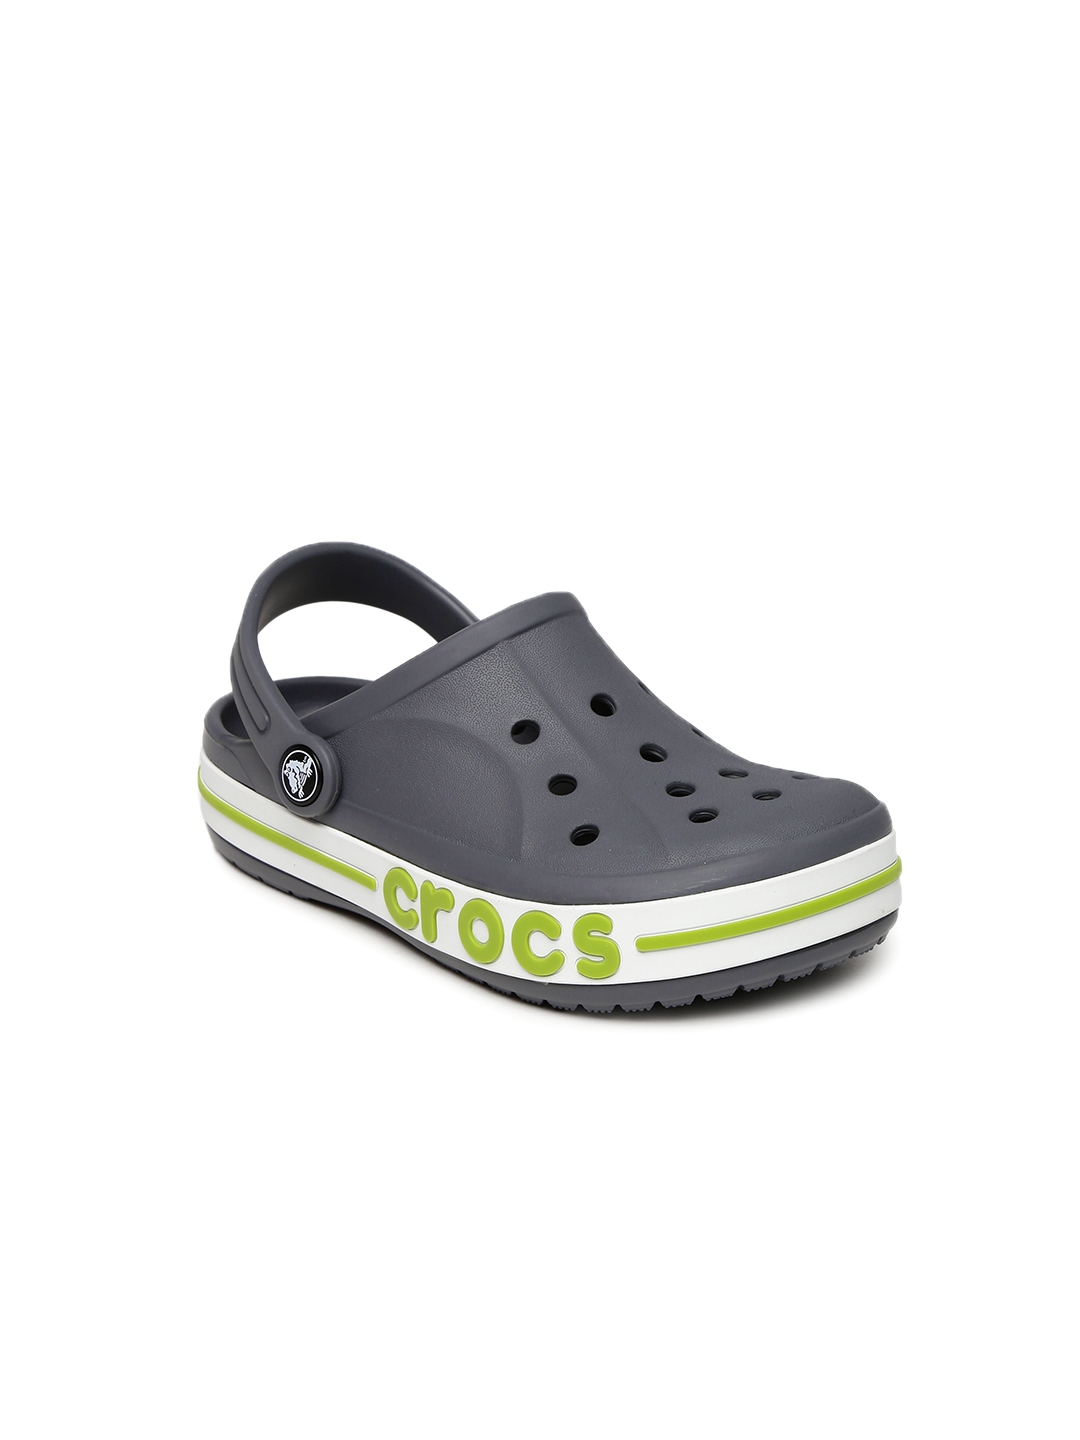 solid crocs